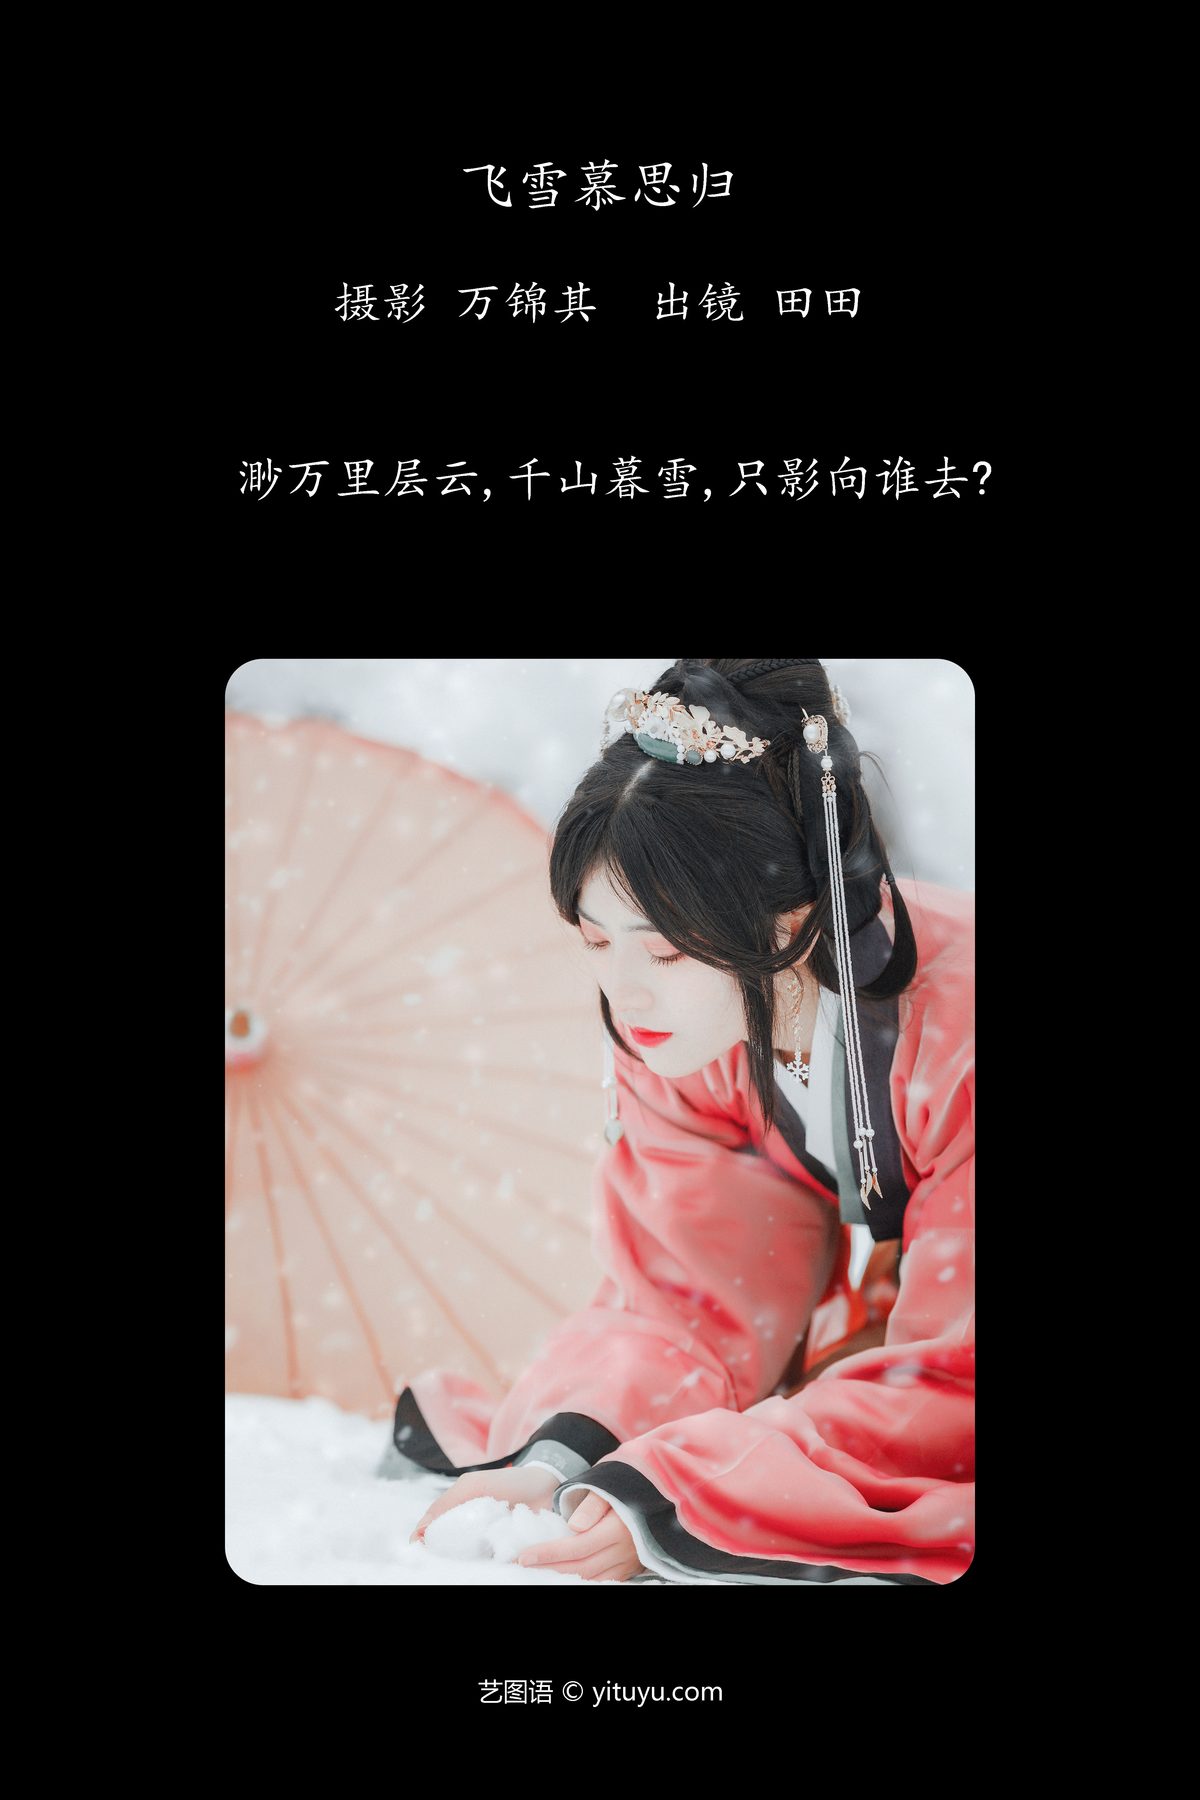 YiTuYu艺图语 Vol 5903 Dang Chu Jiao Ren Jia Xiao Tian Tian 0002 2044436170.jpg